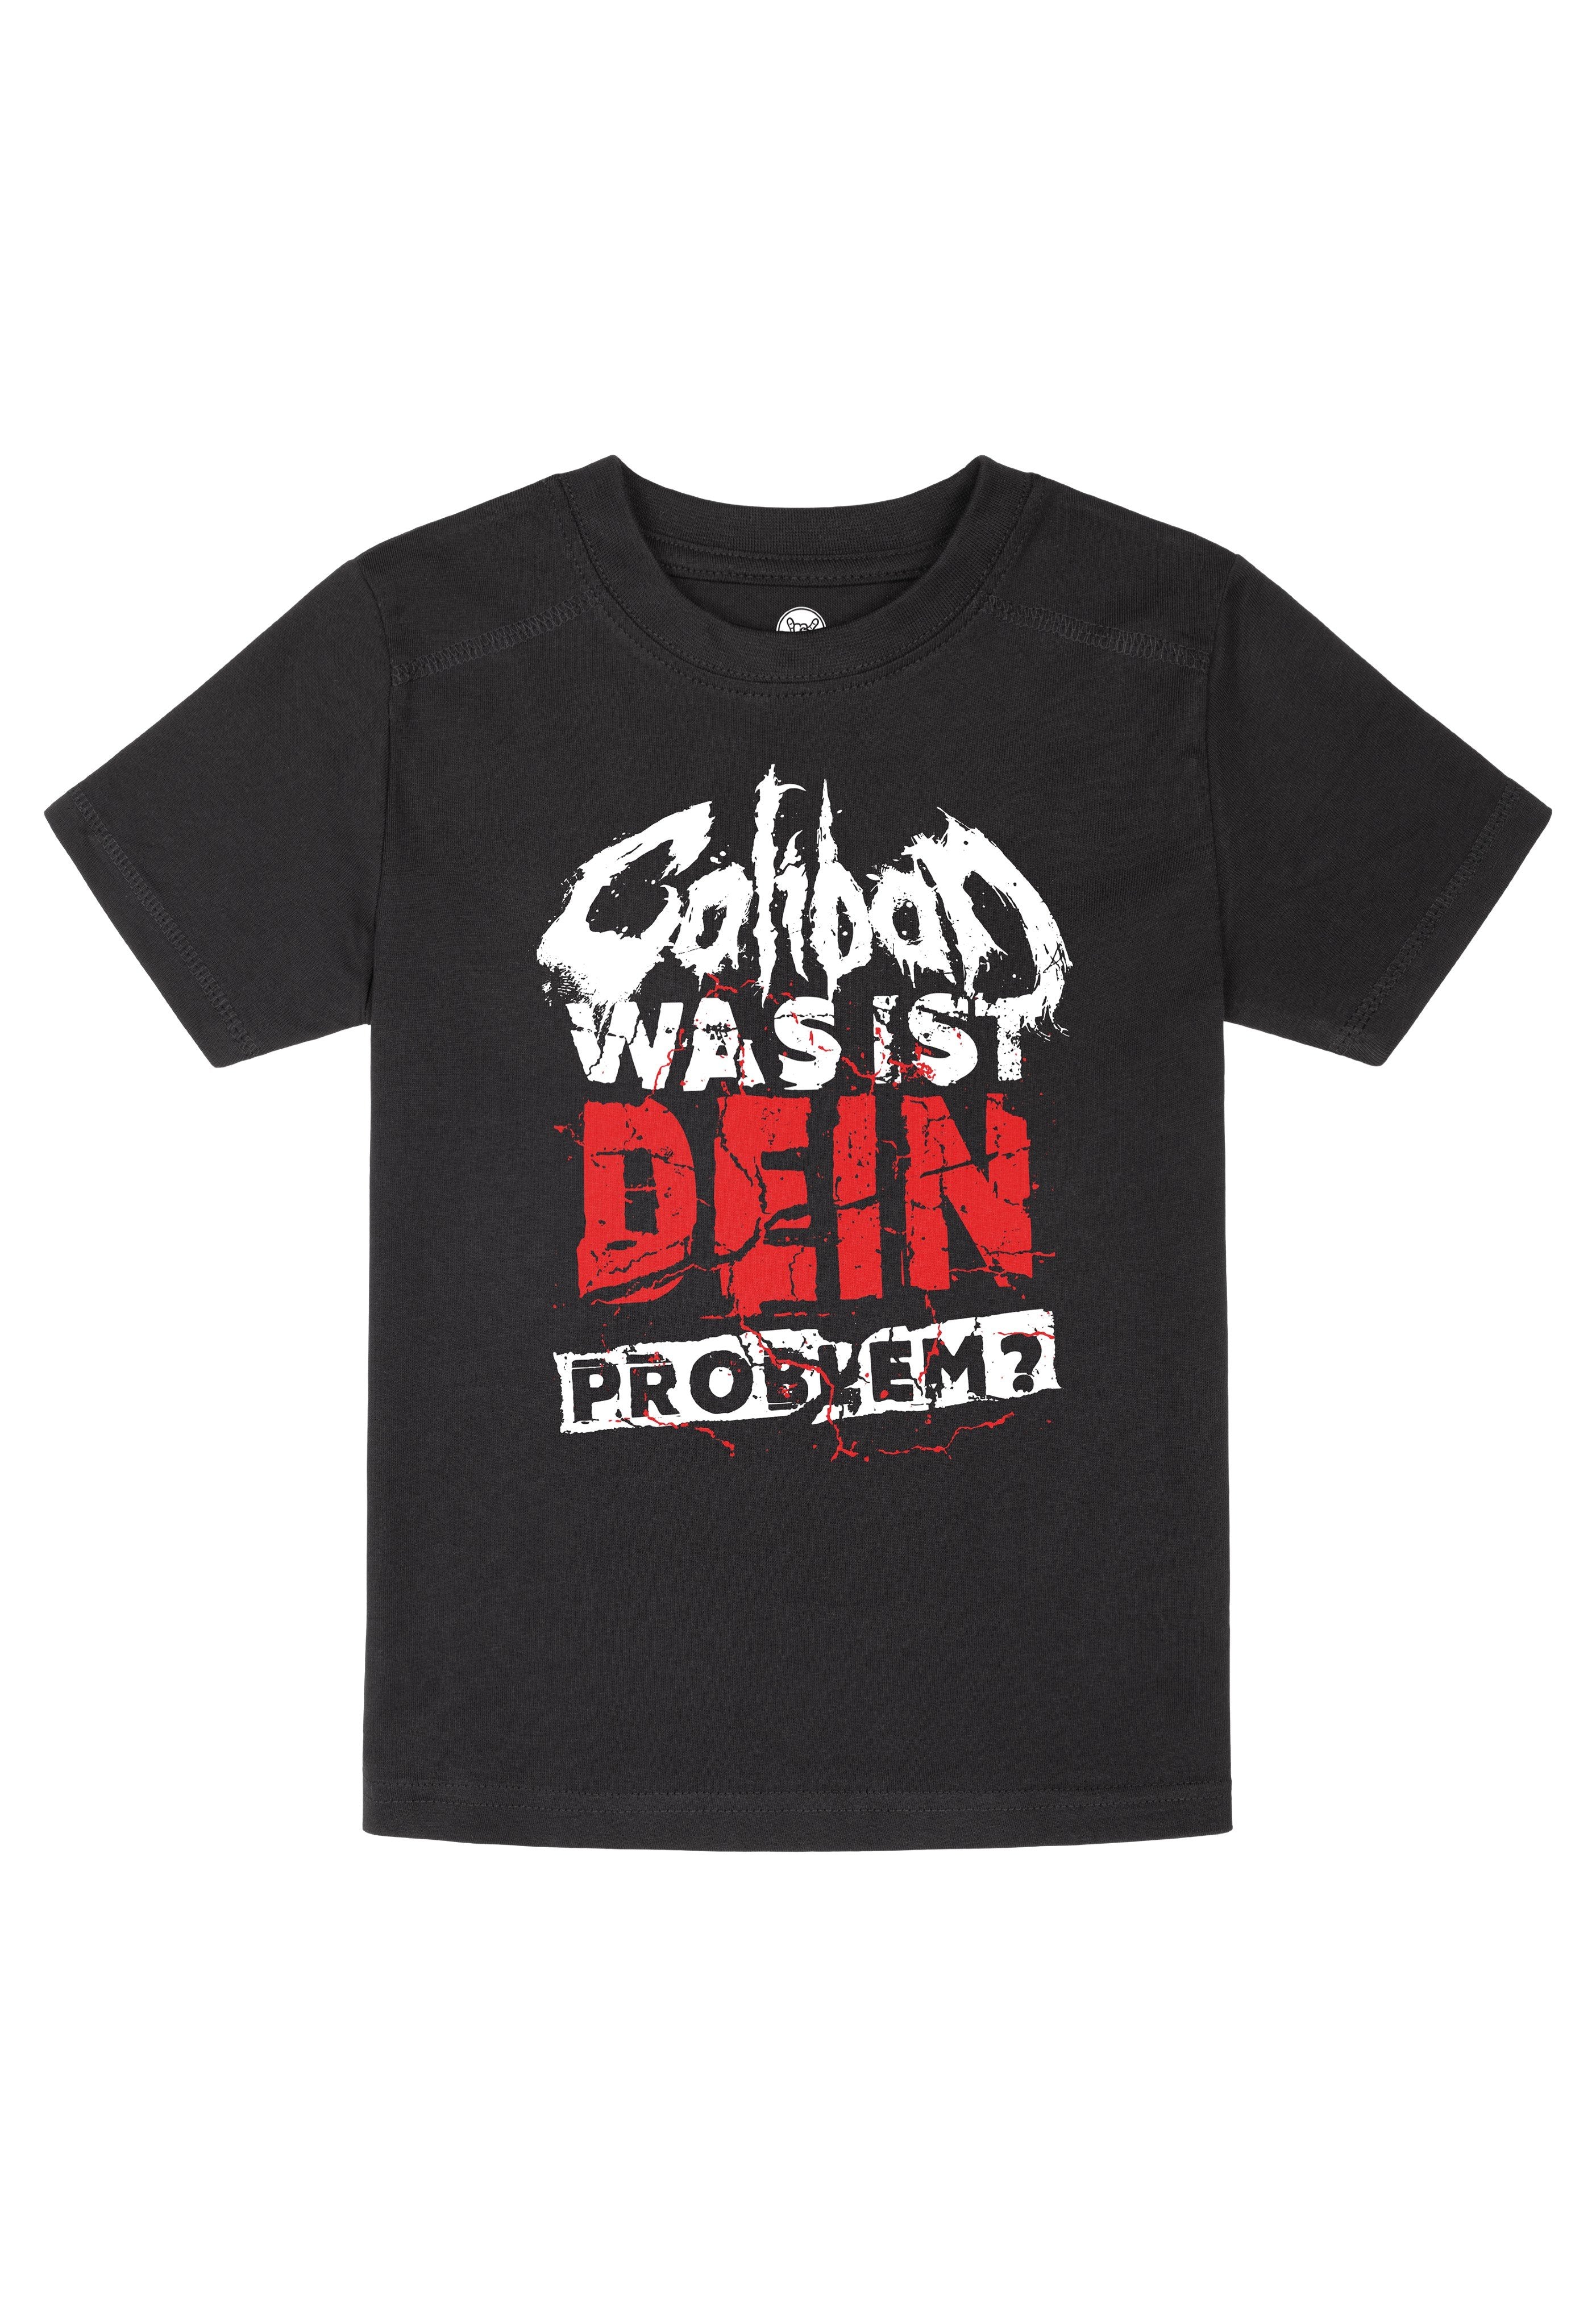 Caliban - Was ist dein Problem? Kids Black/White - T-Shirt